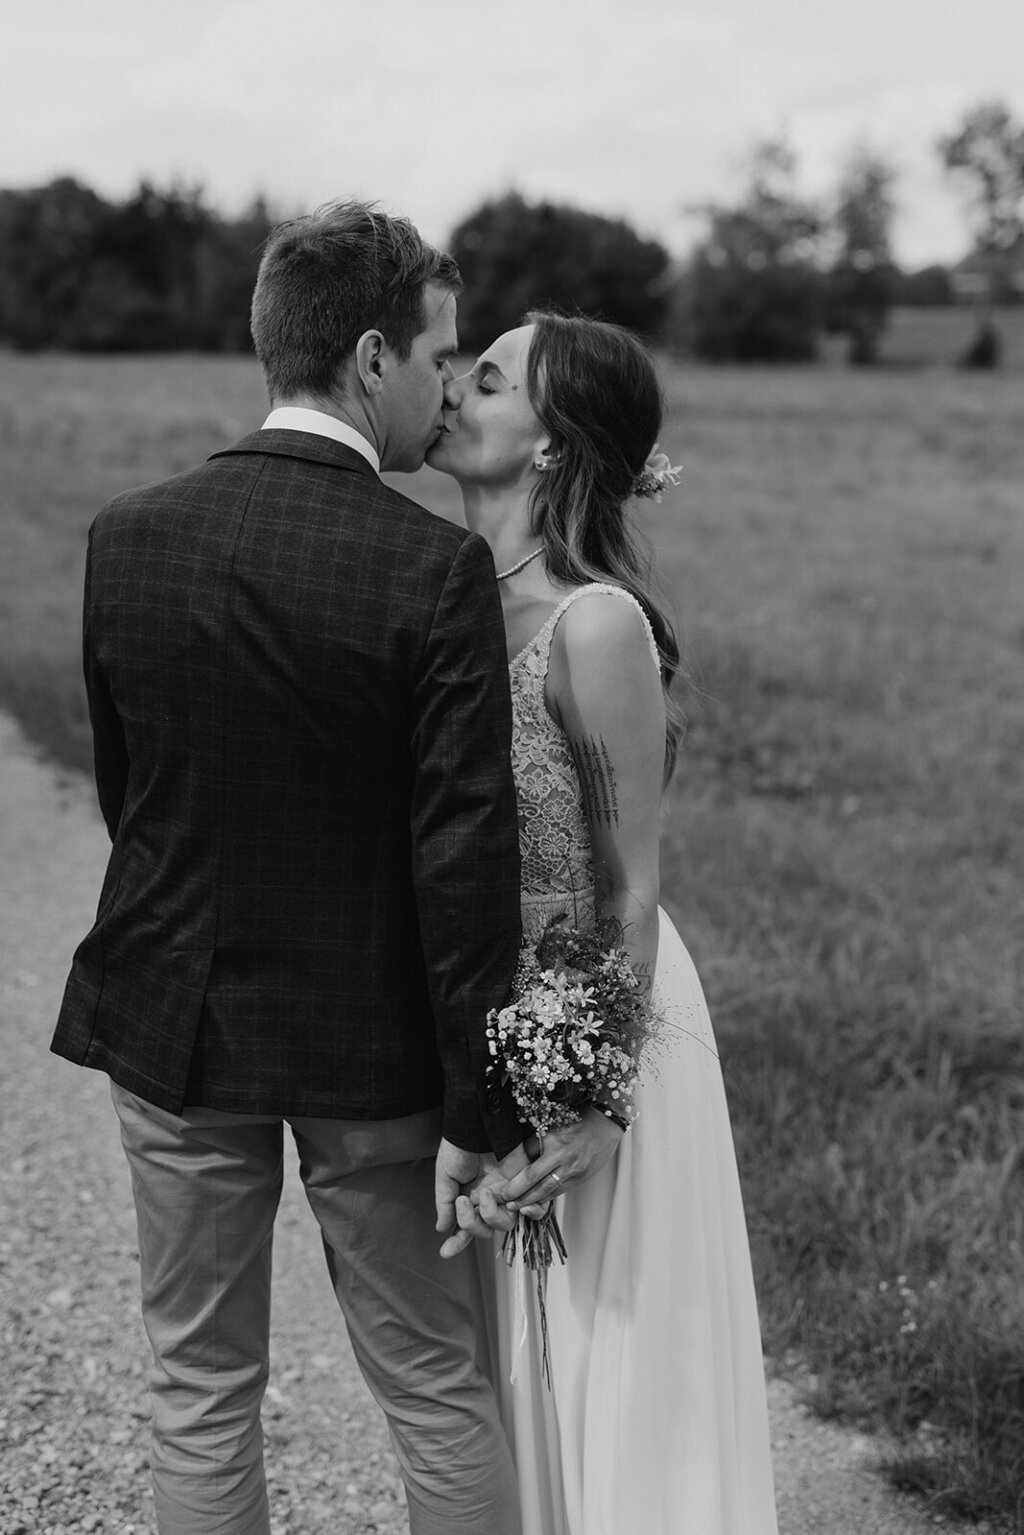 Ein Hochzeitspaar küsst sich auf einem Feldweg.